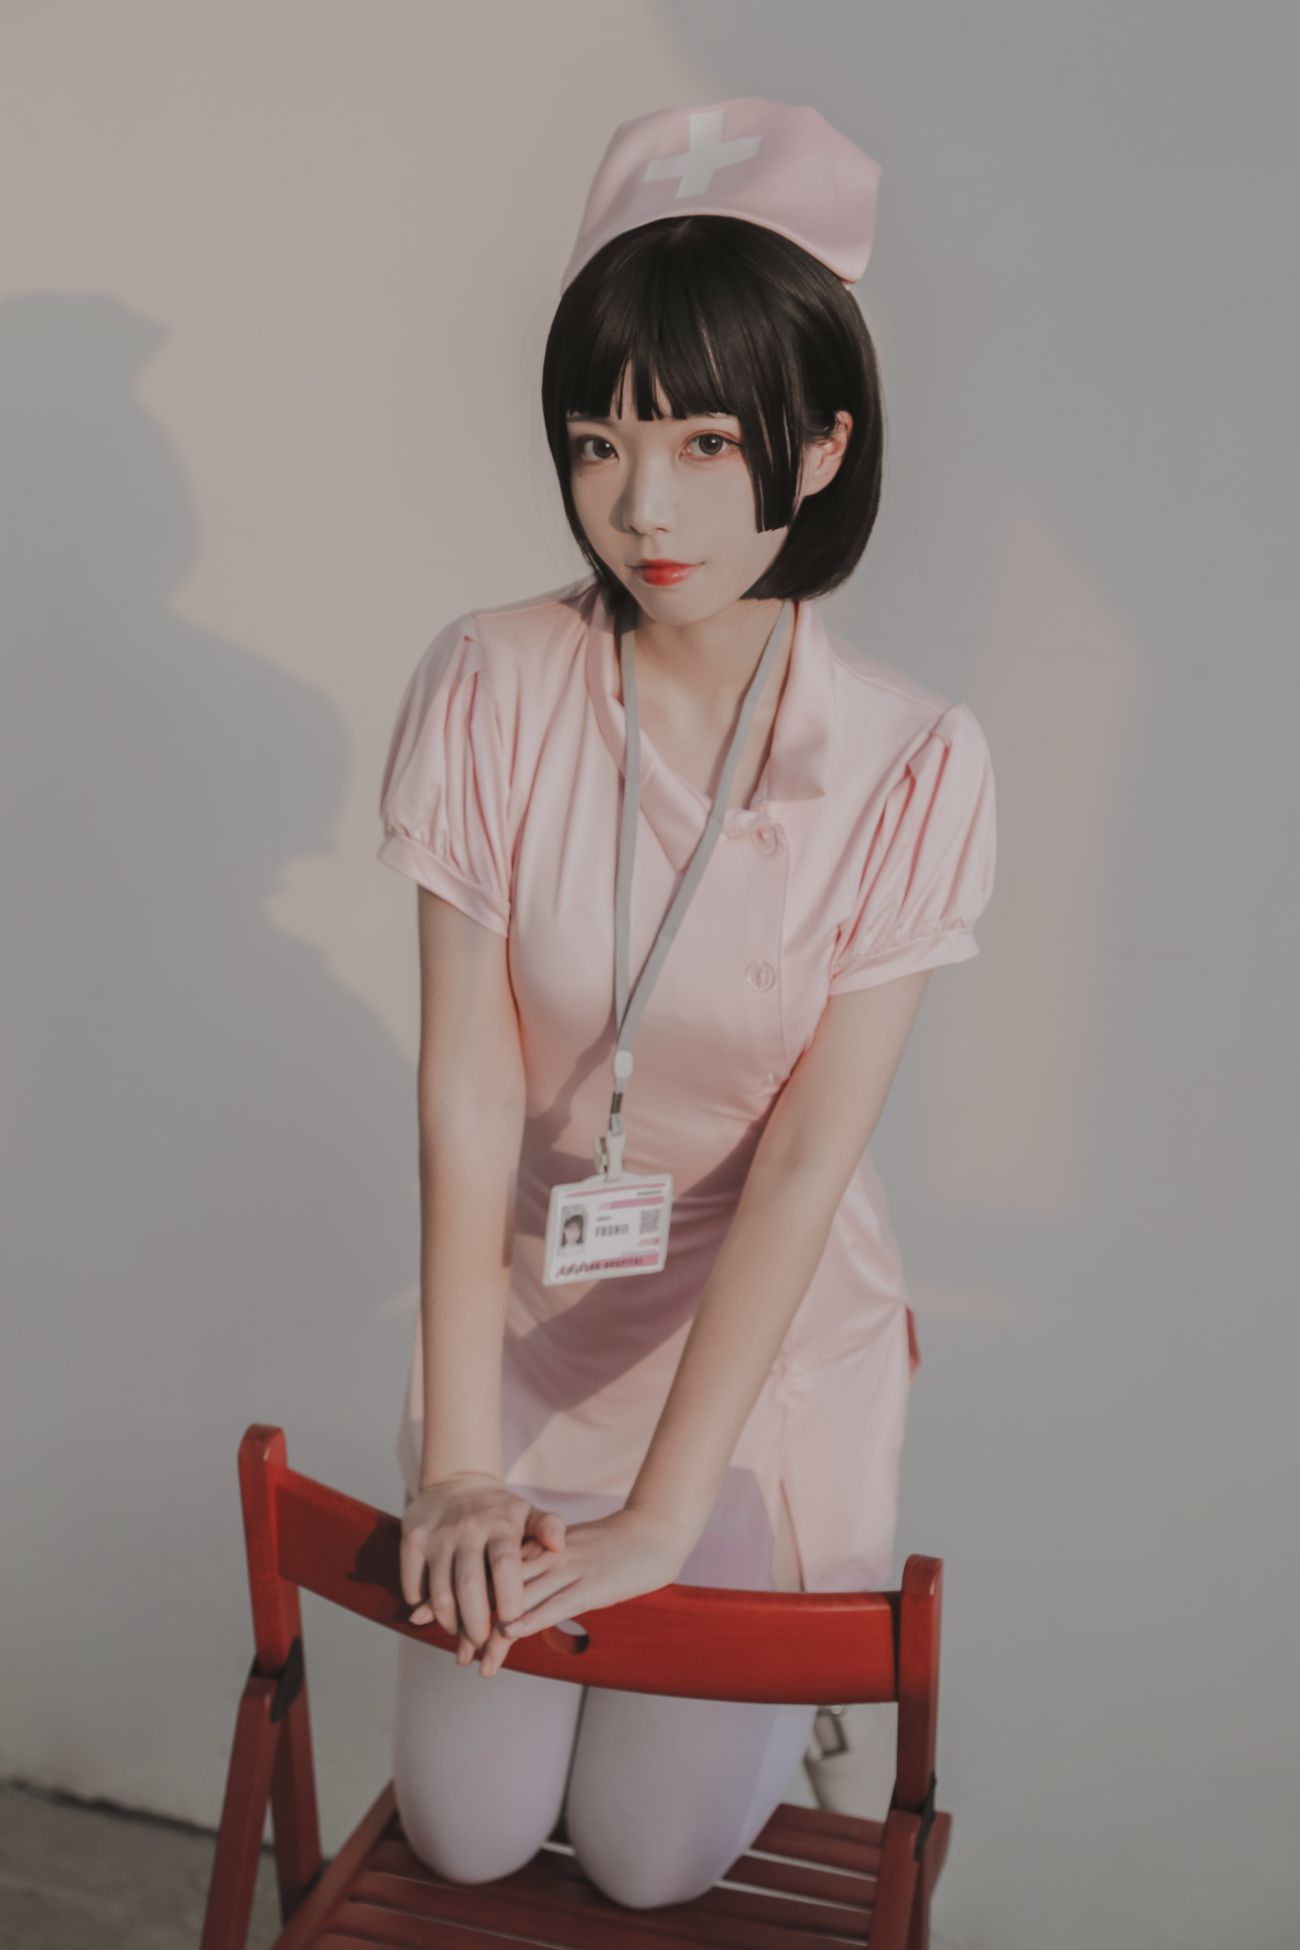 微博美少女Fushii海堂Cosplay性感写真护士 (22)